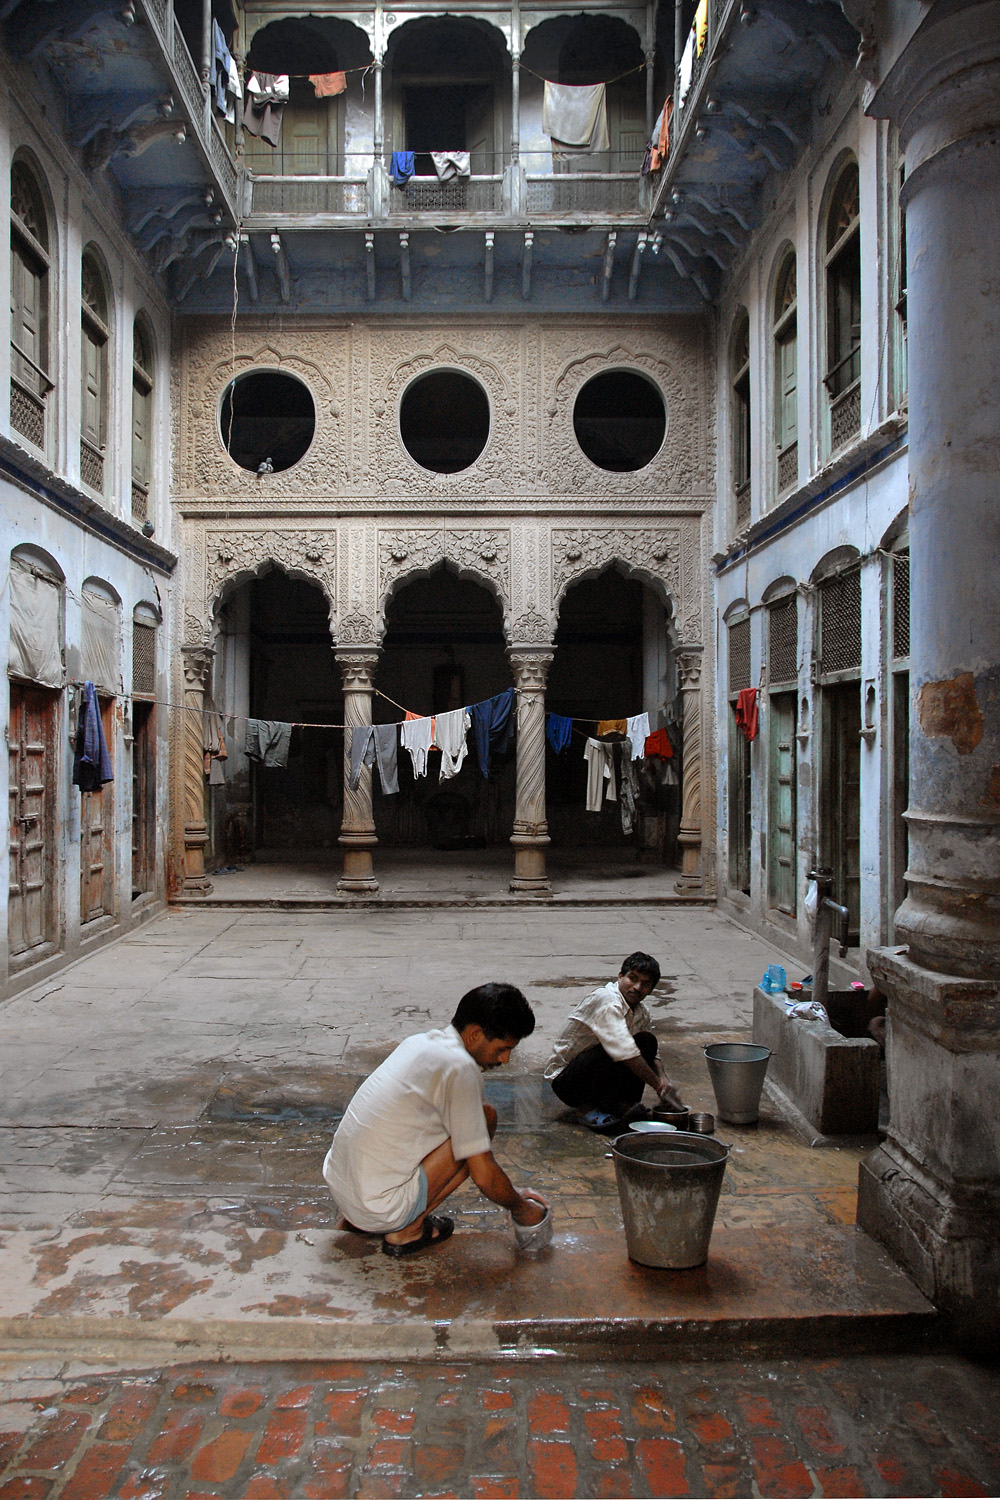 bill-hocker-courtyard-amritsar-india-2006